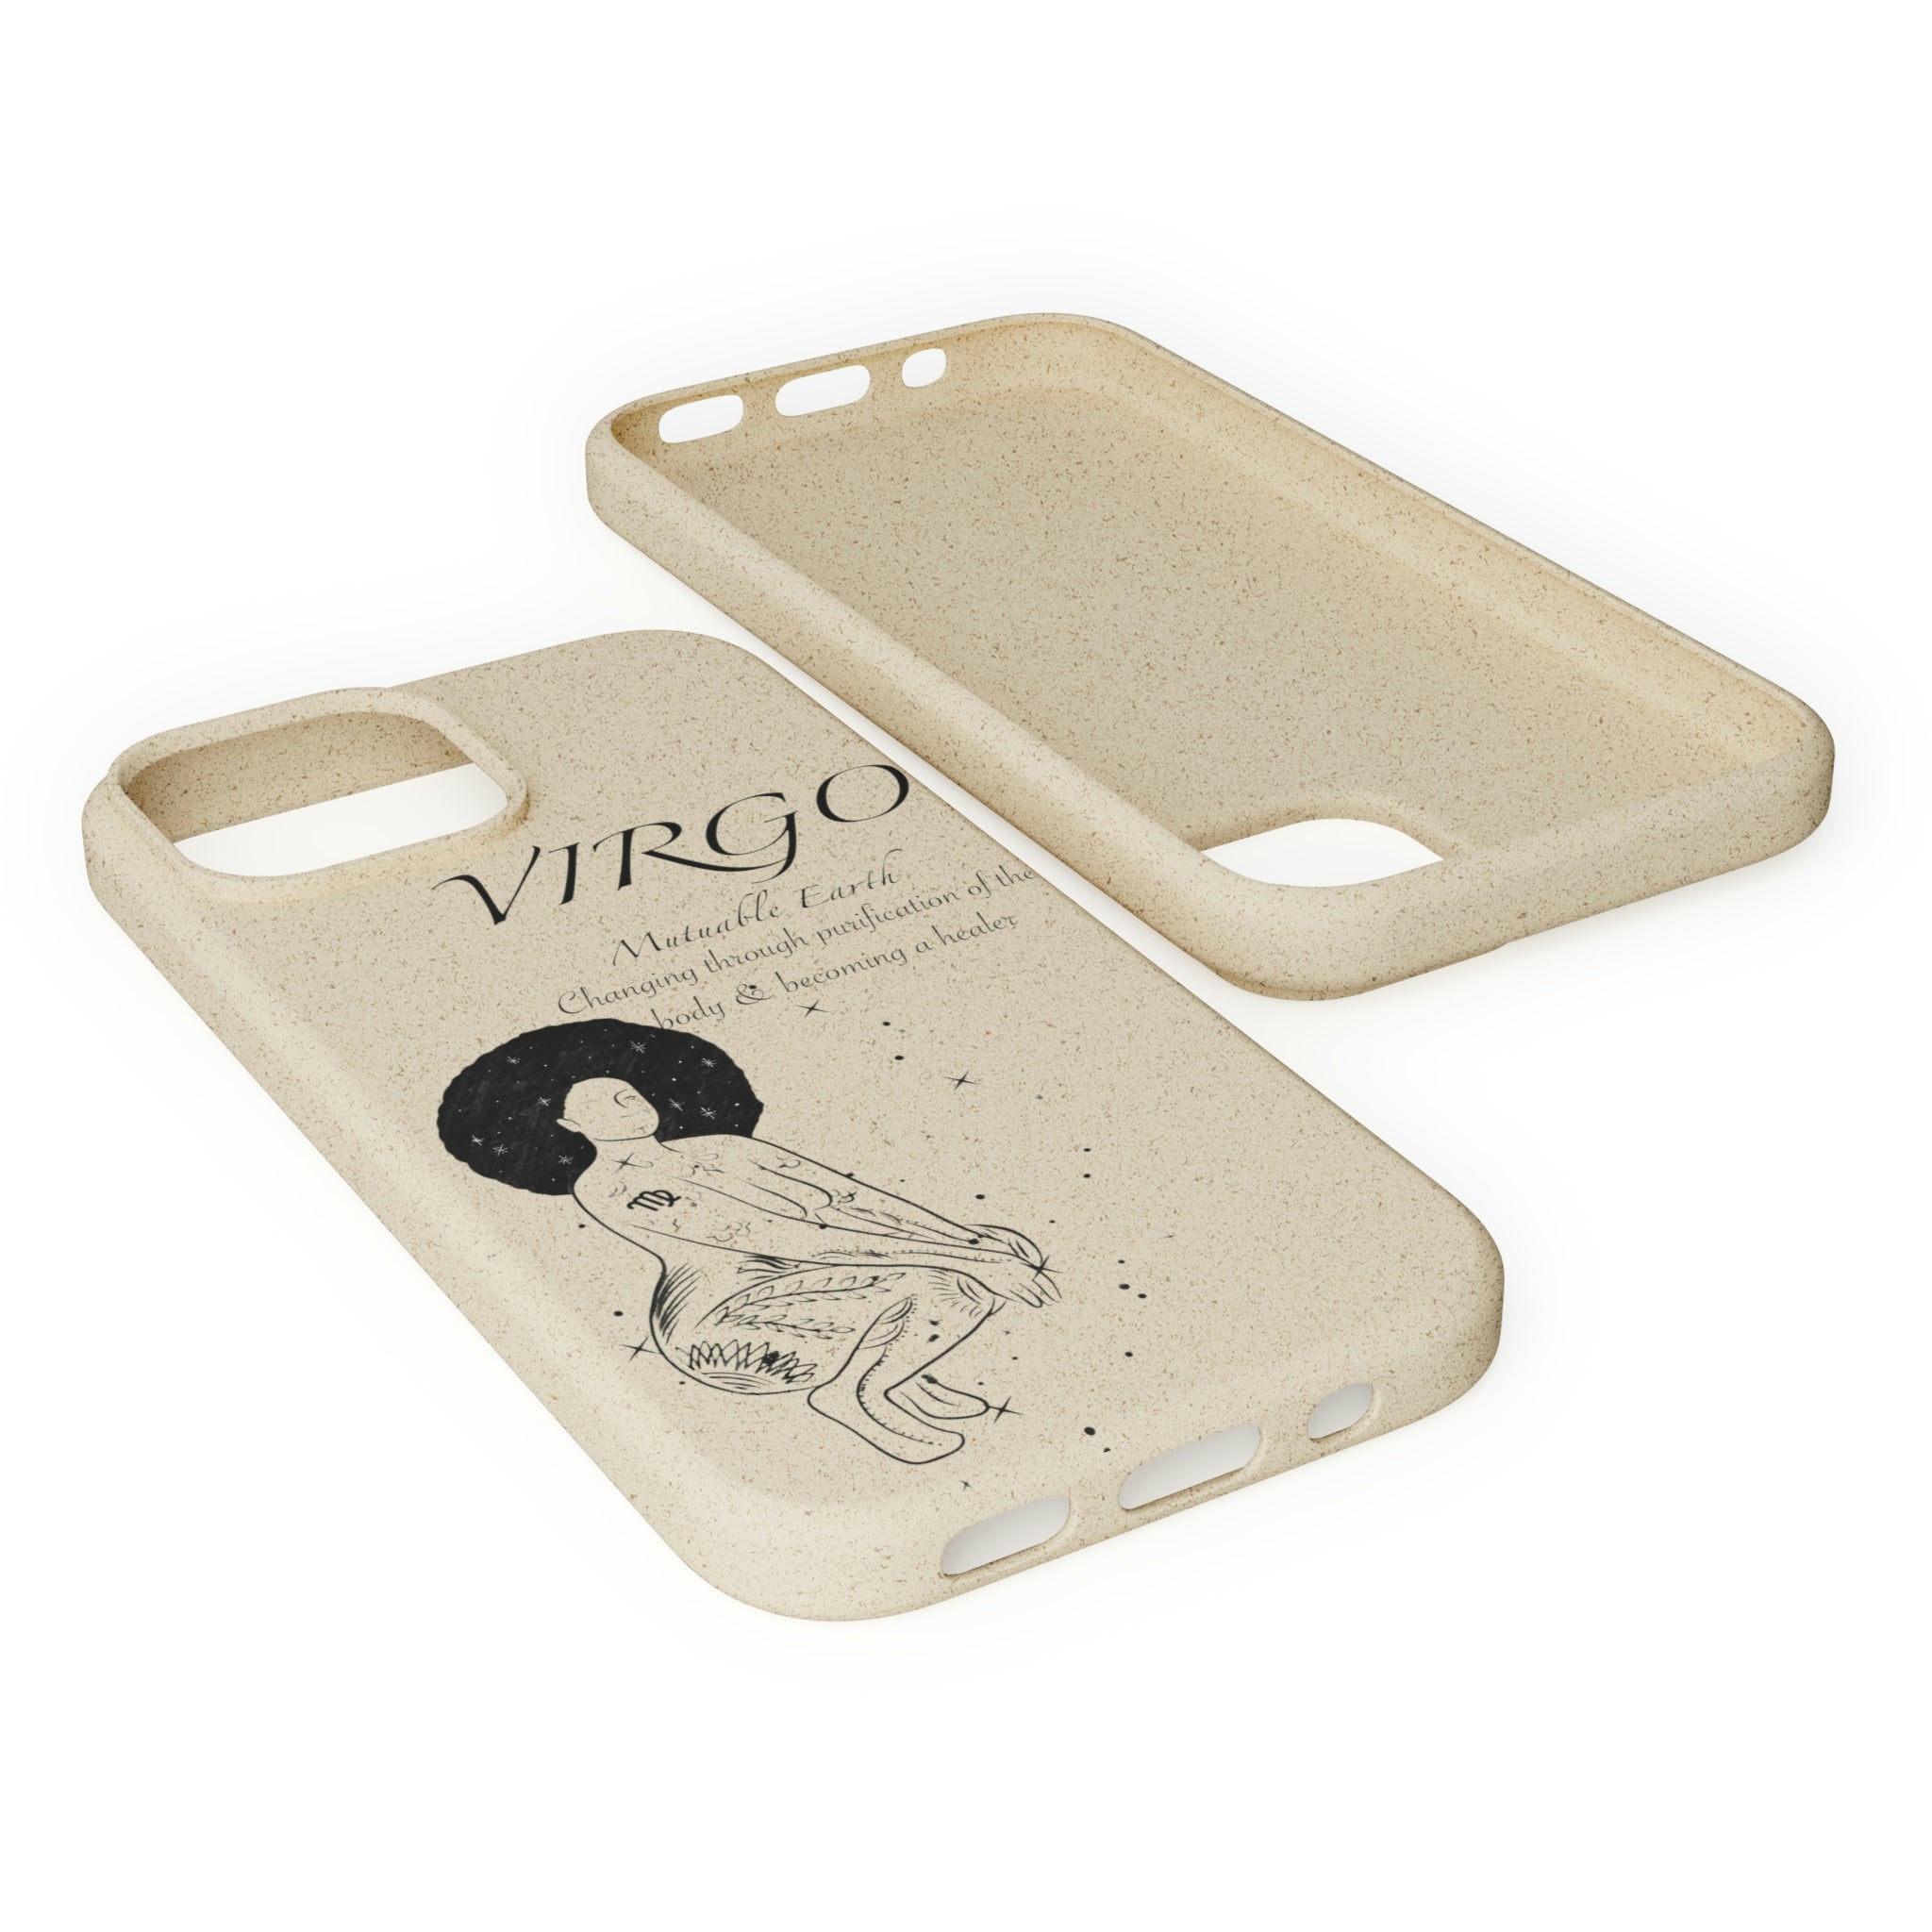 Virgo African Queen Biodegradable Phone Case Printify